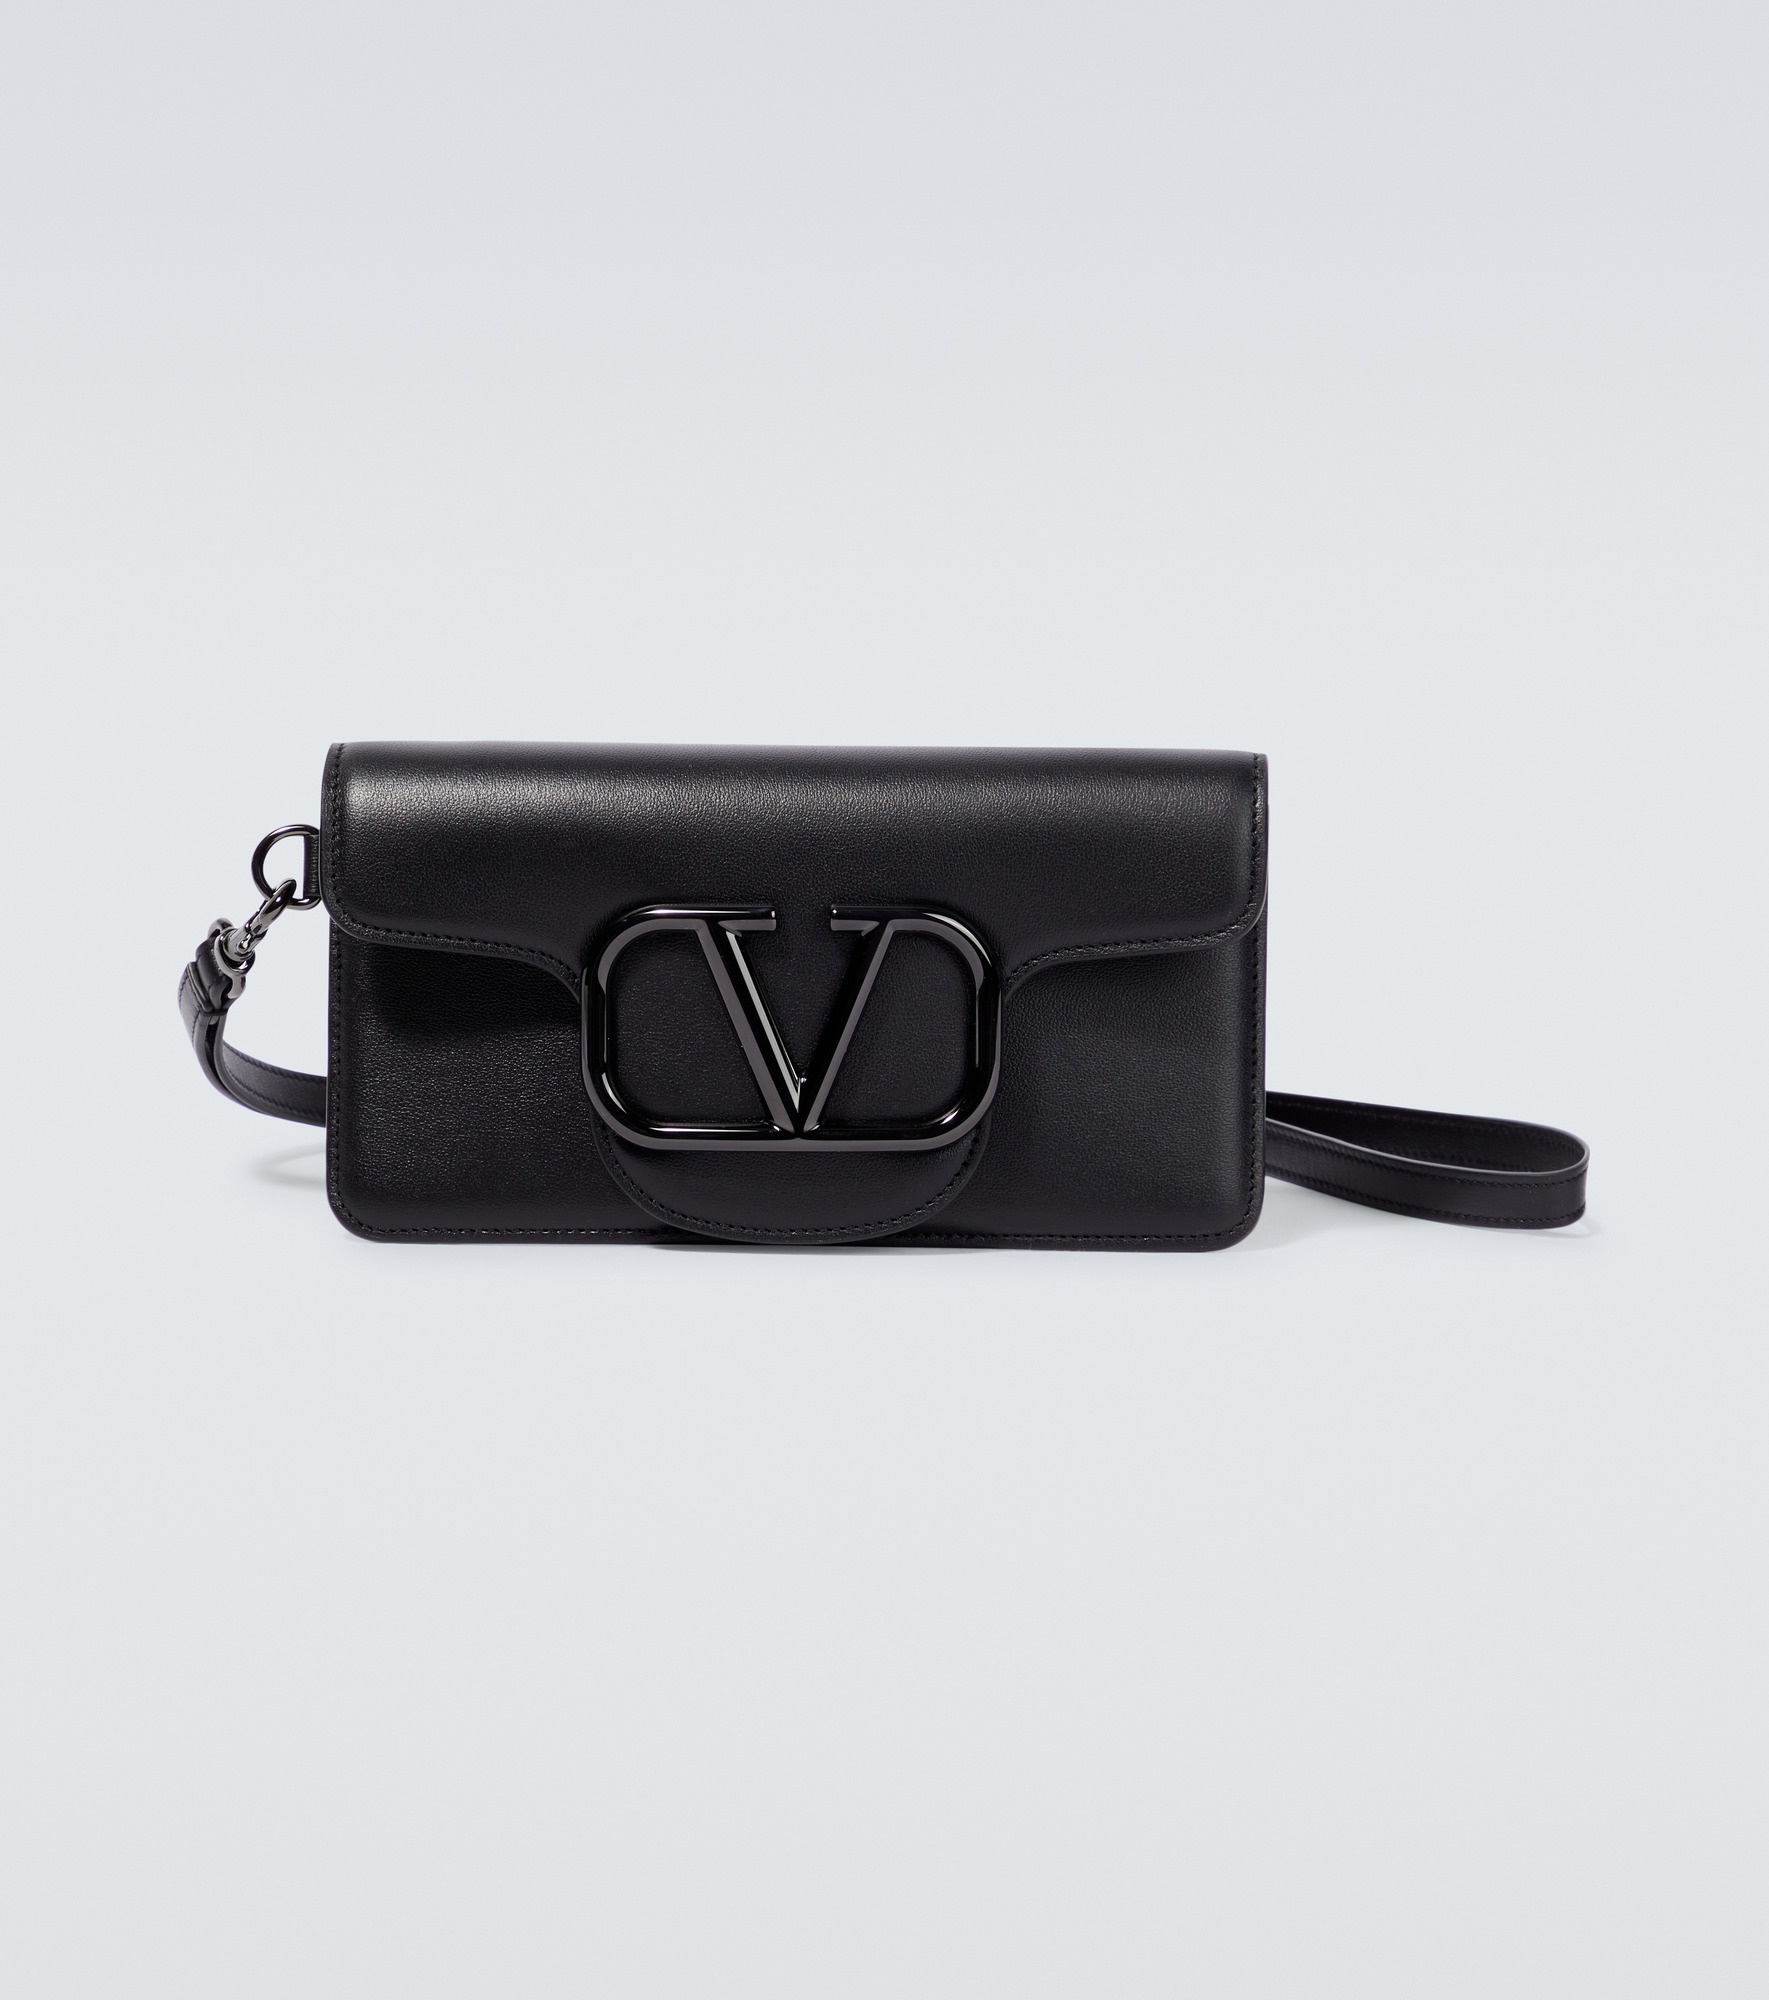 VLogo leather phone case - 1